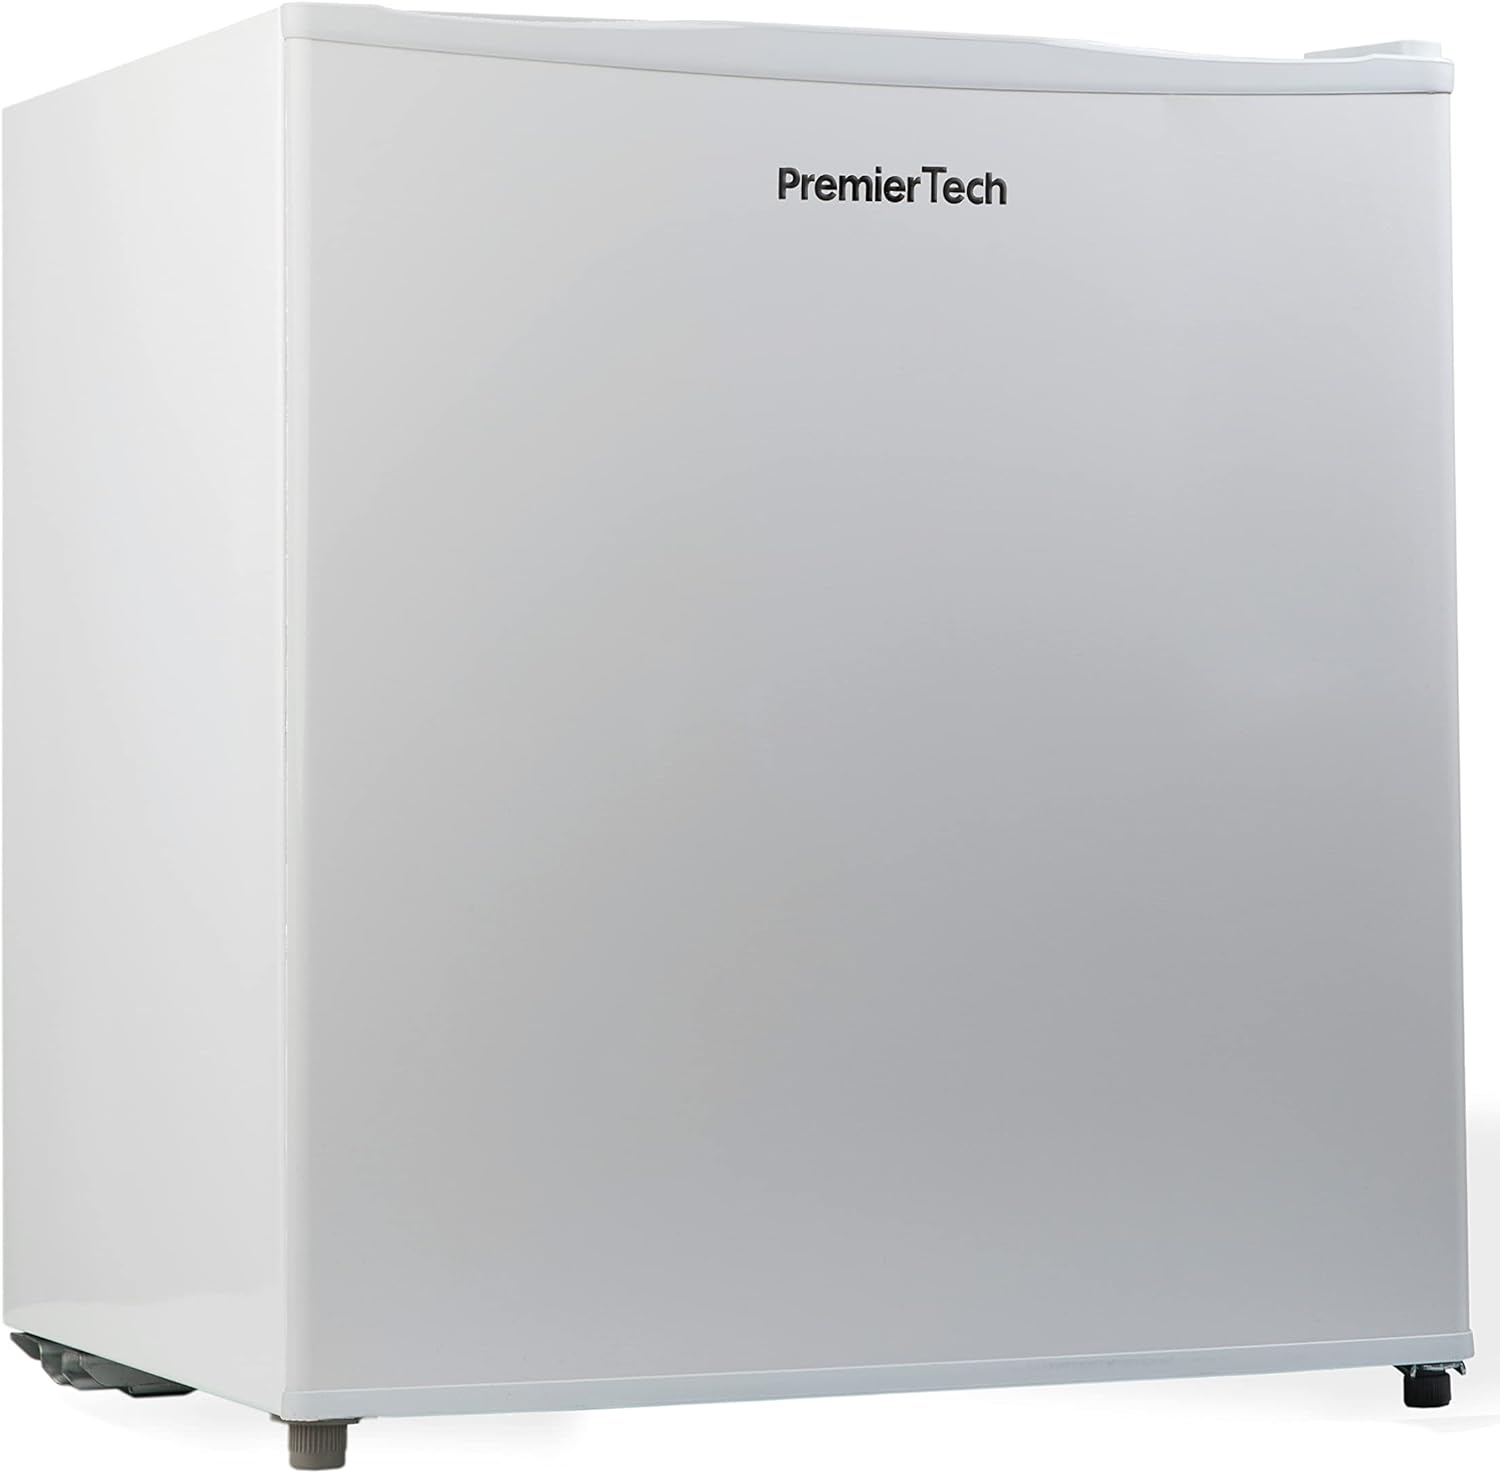 PremierTech Mini Congelatore Compatto Mini Freezer 32 litri -24° gradi 4**** Stelle PT-FR32 Classe E